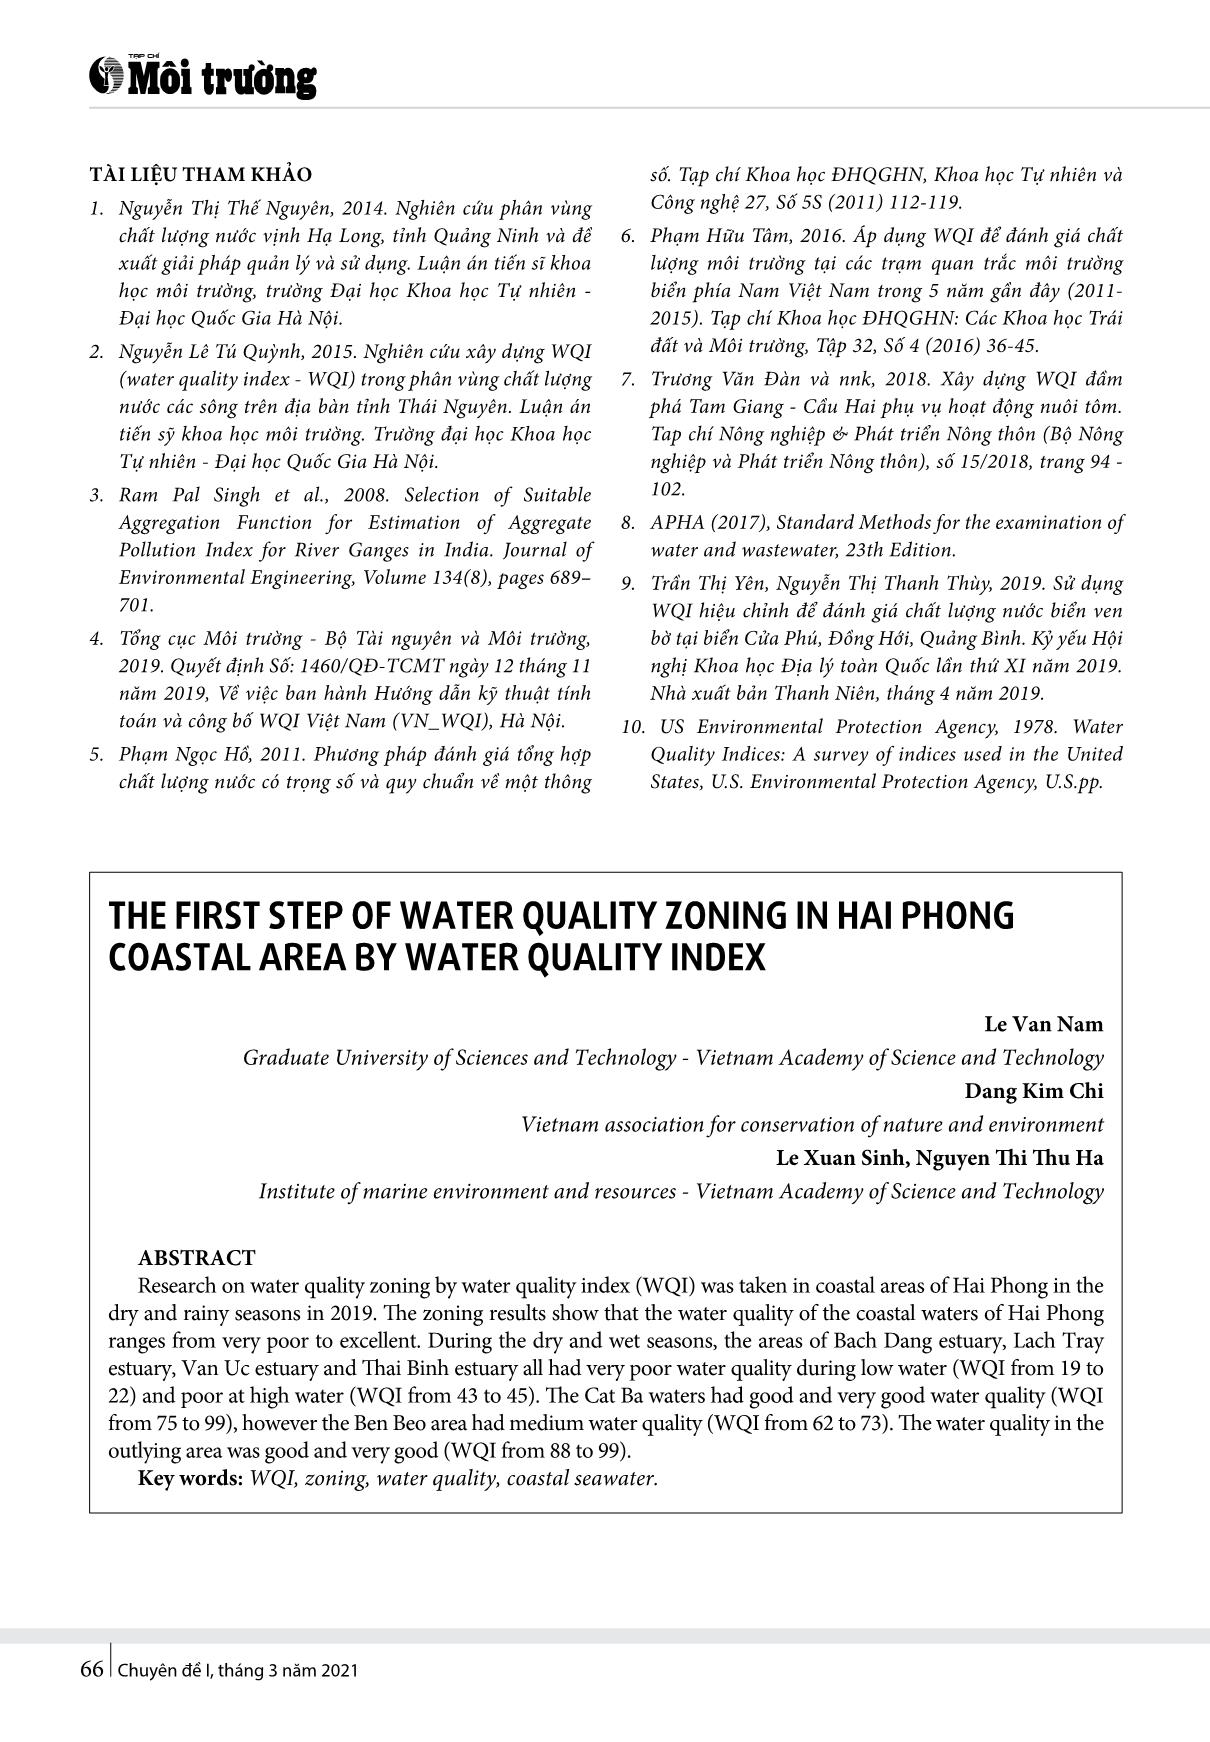 Bước đầu phân vùng chất lượng nước vùng biển ven bờ Hải Phòng bằng WQI trang 7